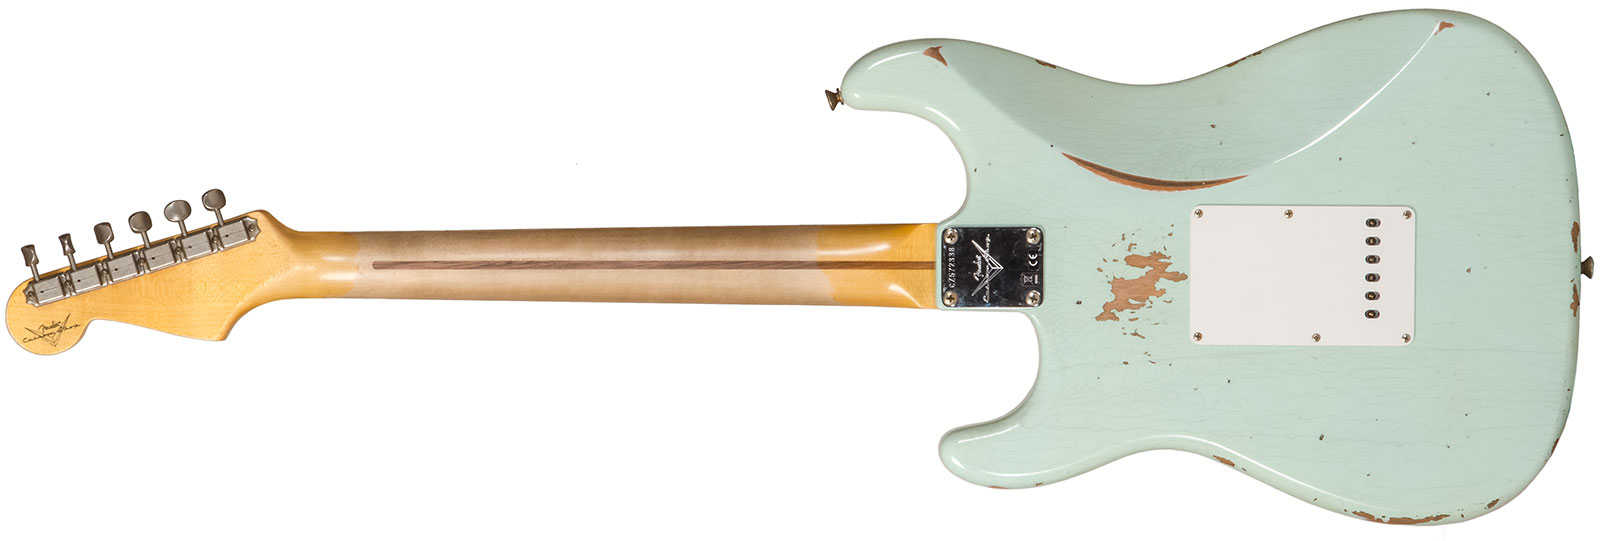 Fender Custom Shop Strat 1958 3s Trem Mn #cz572338 - Relic Aged Surf Green - Str shape electric guitar - Variation 1